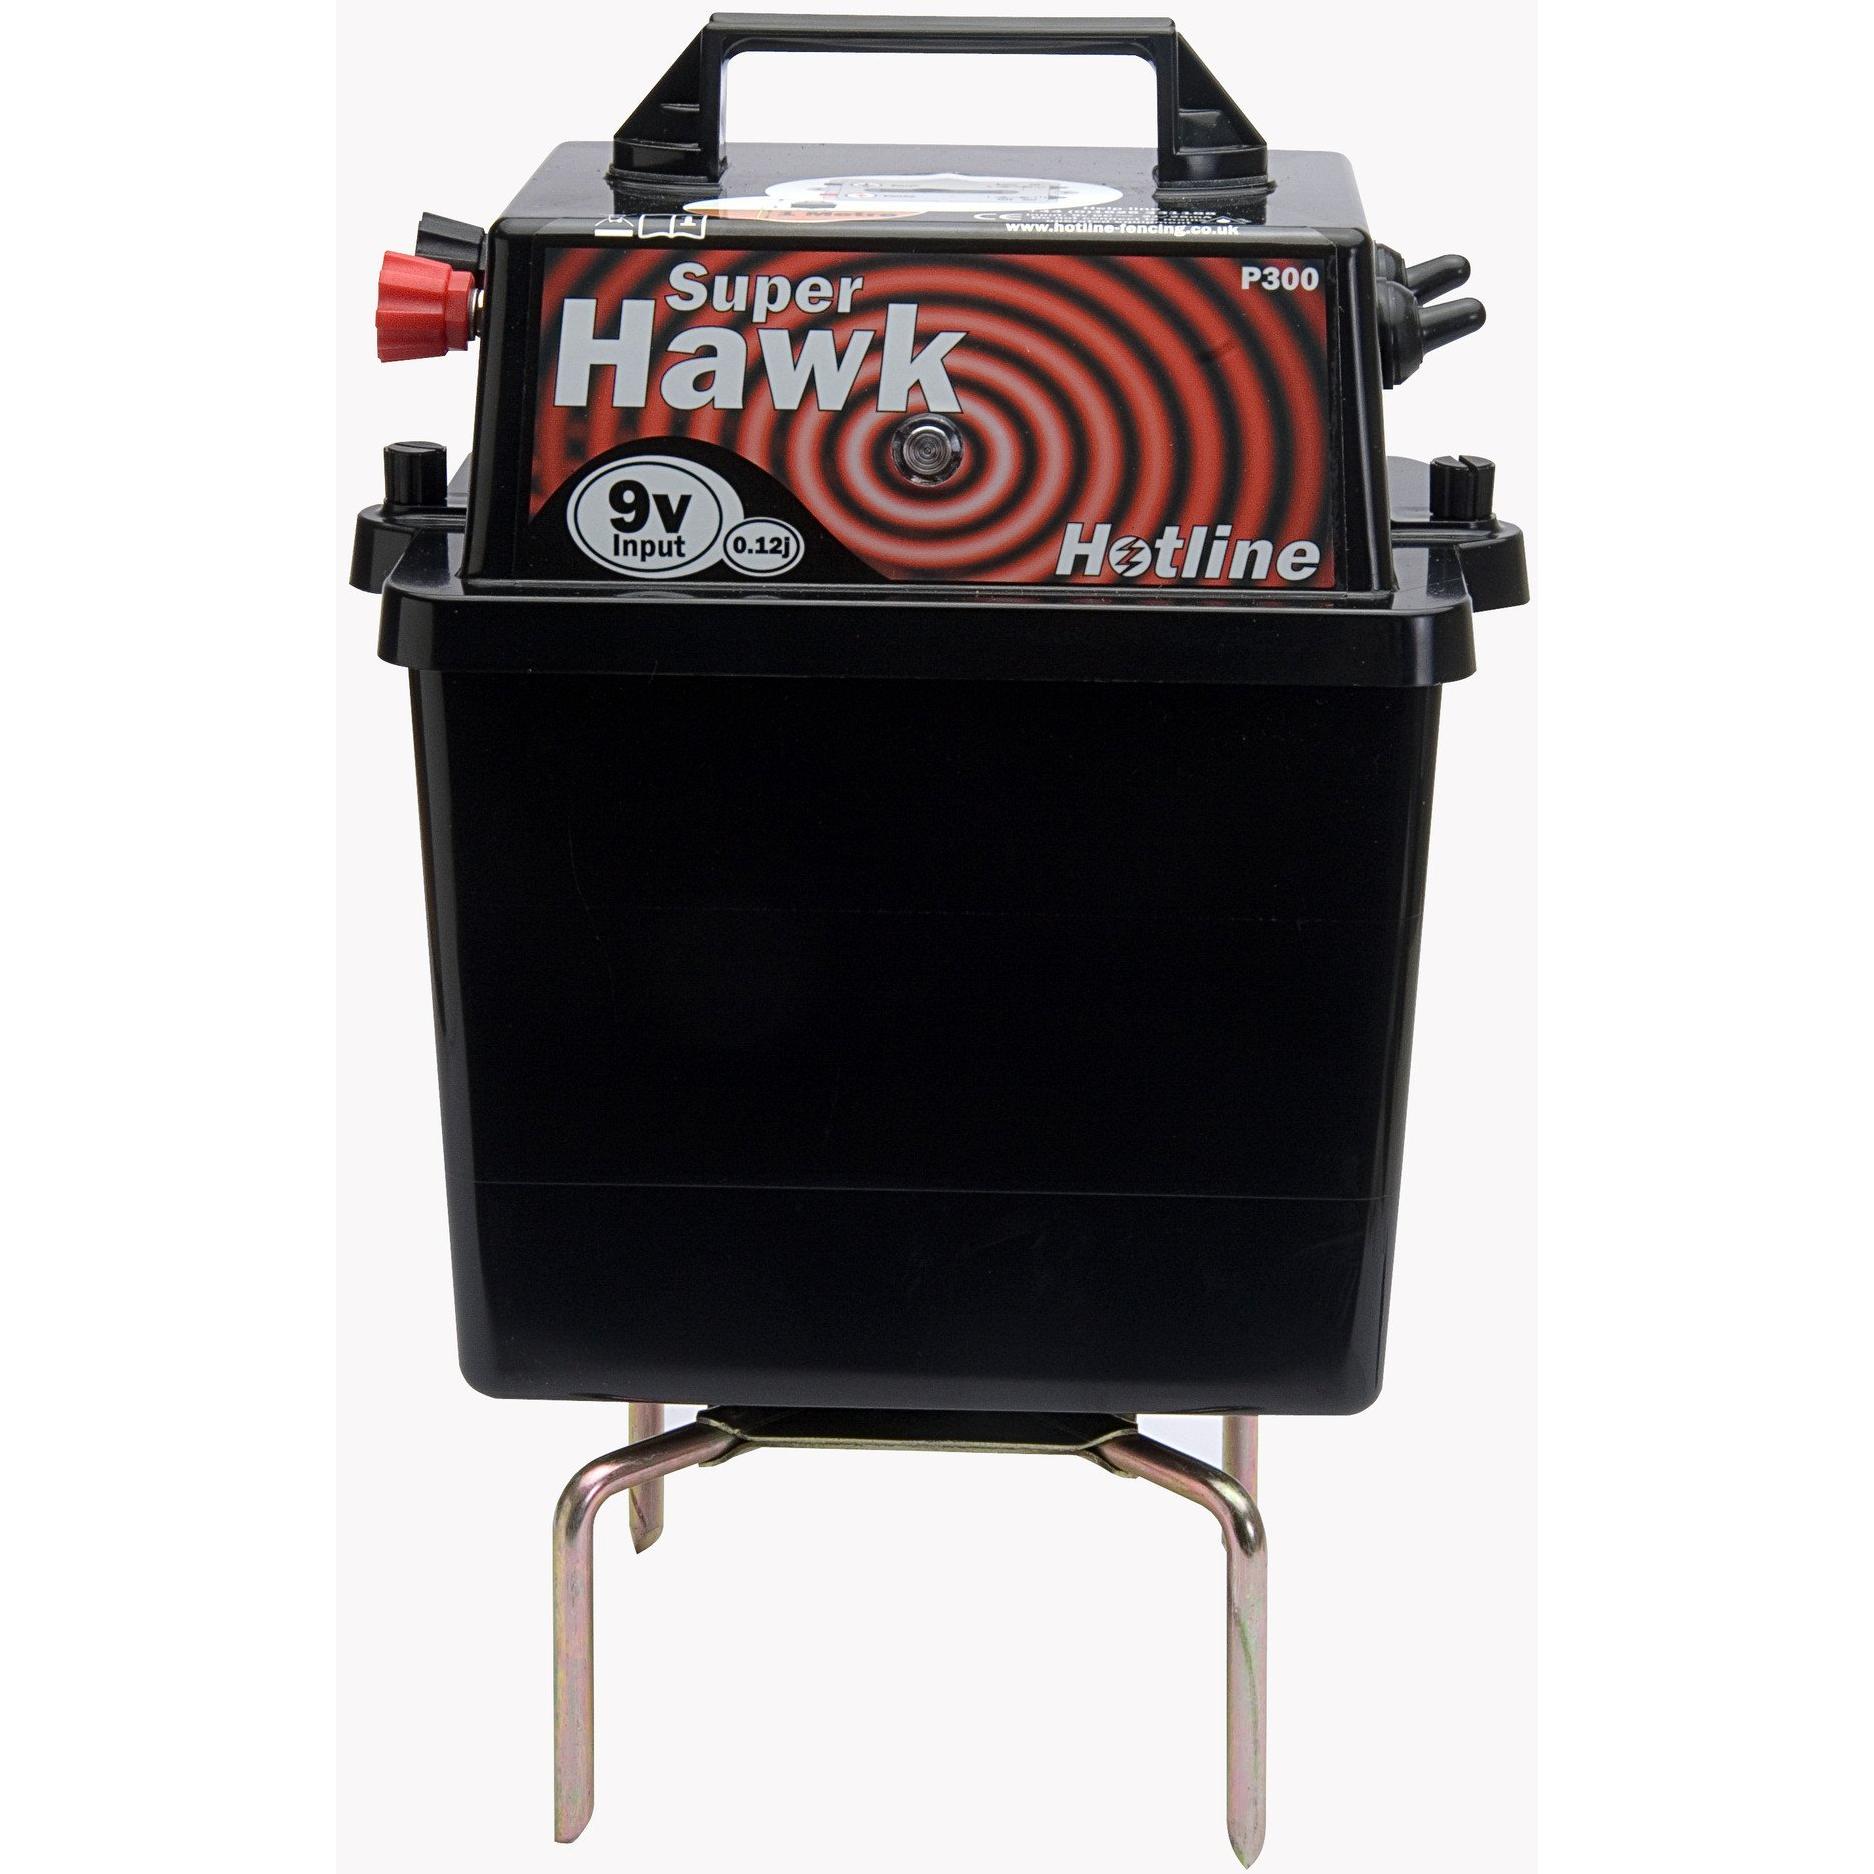 Image of Hotline HLB300 Super Hawk 9/12v Electric Fence Energiser / Fencer